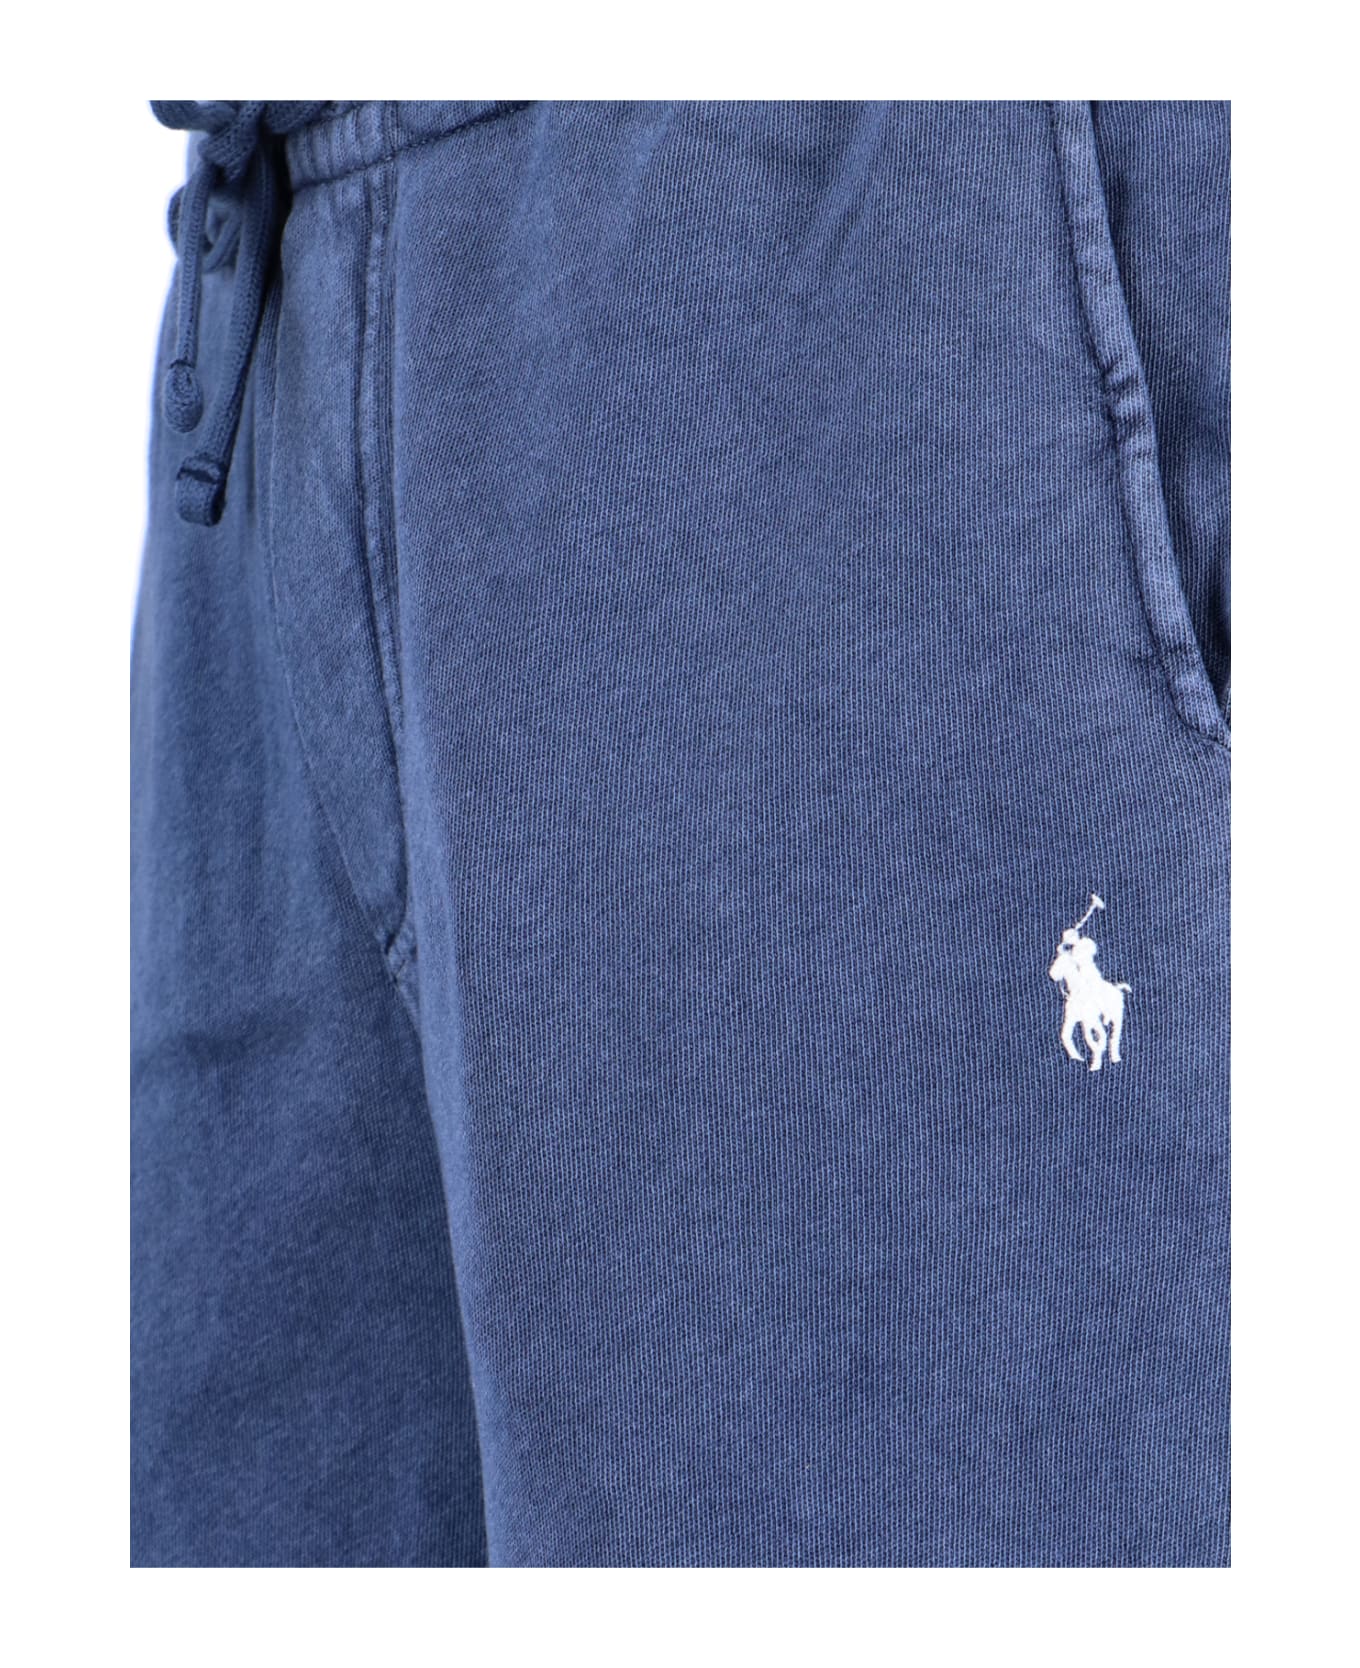 Polo Ralph Lauren Cotton Shorts - blue